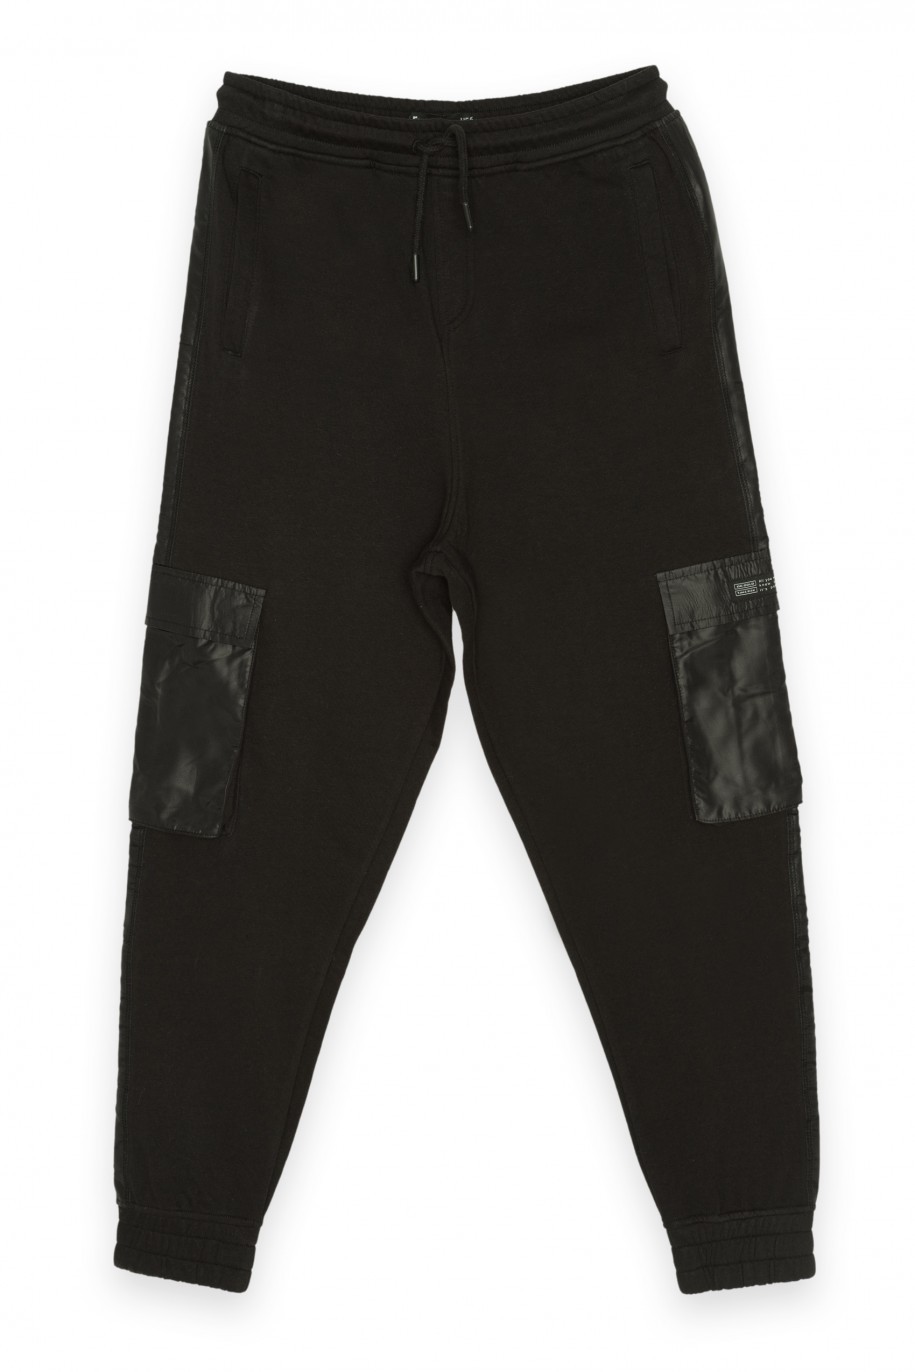 Czarne dresowe spodnie typu jogger z kieszeniami cargo - 40215